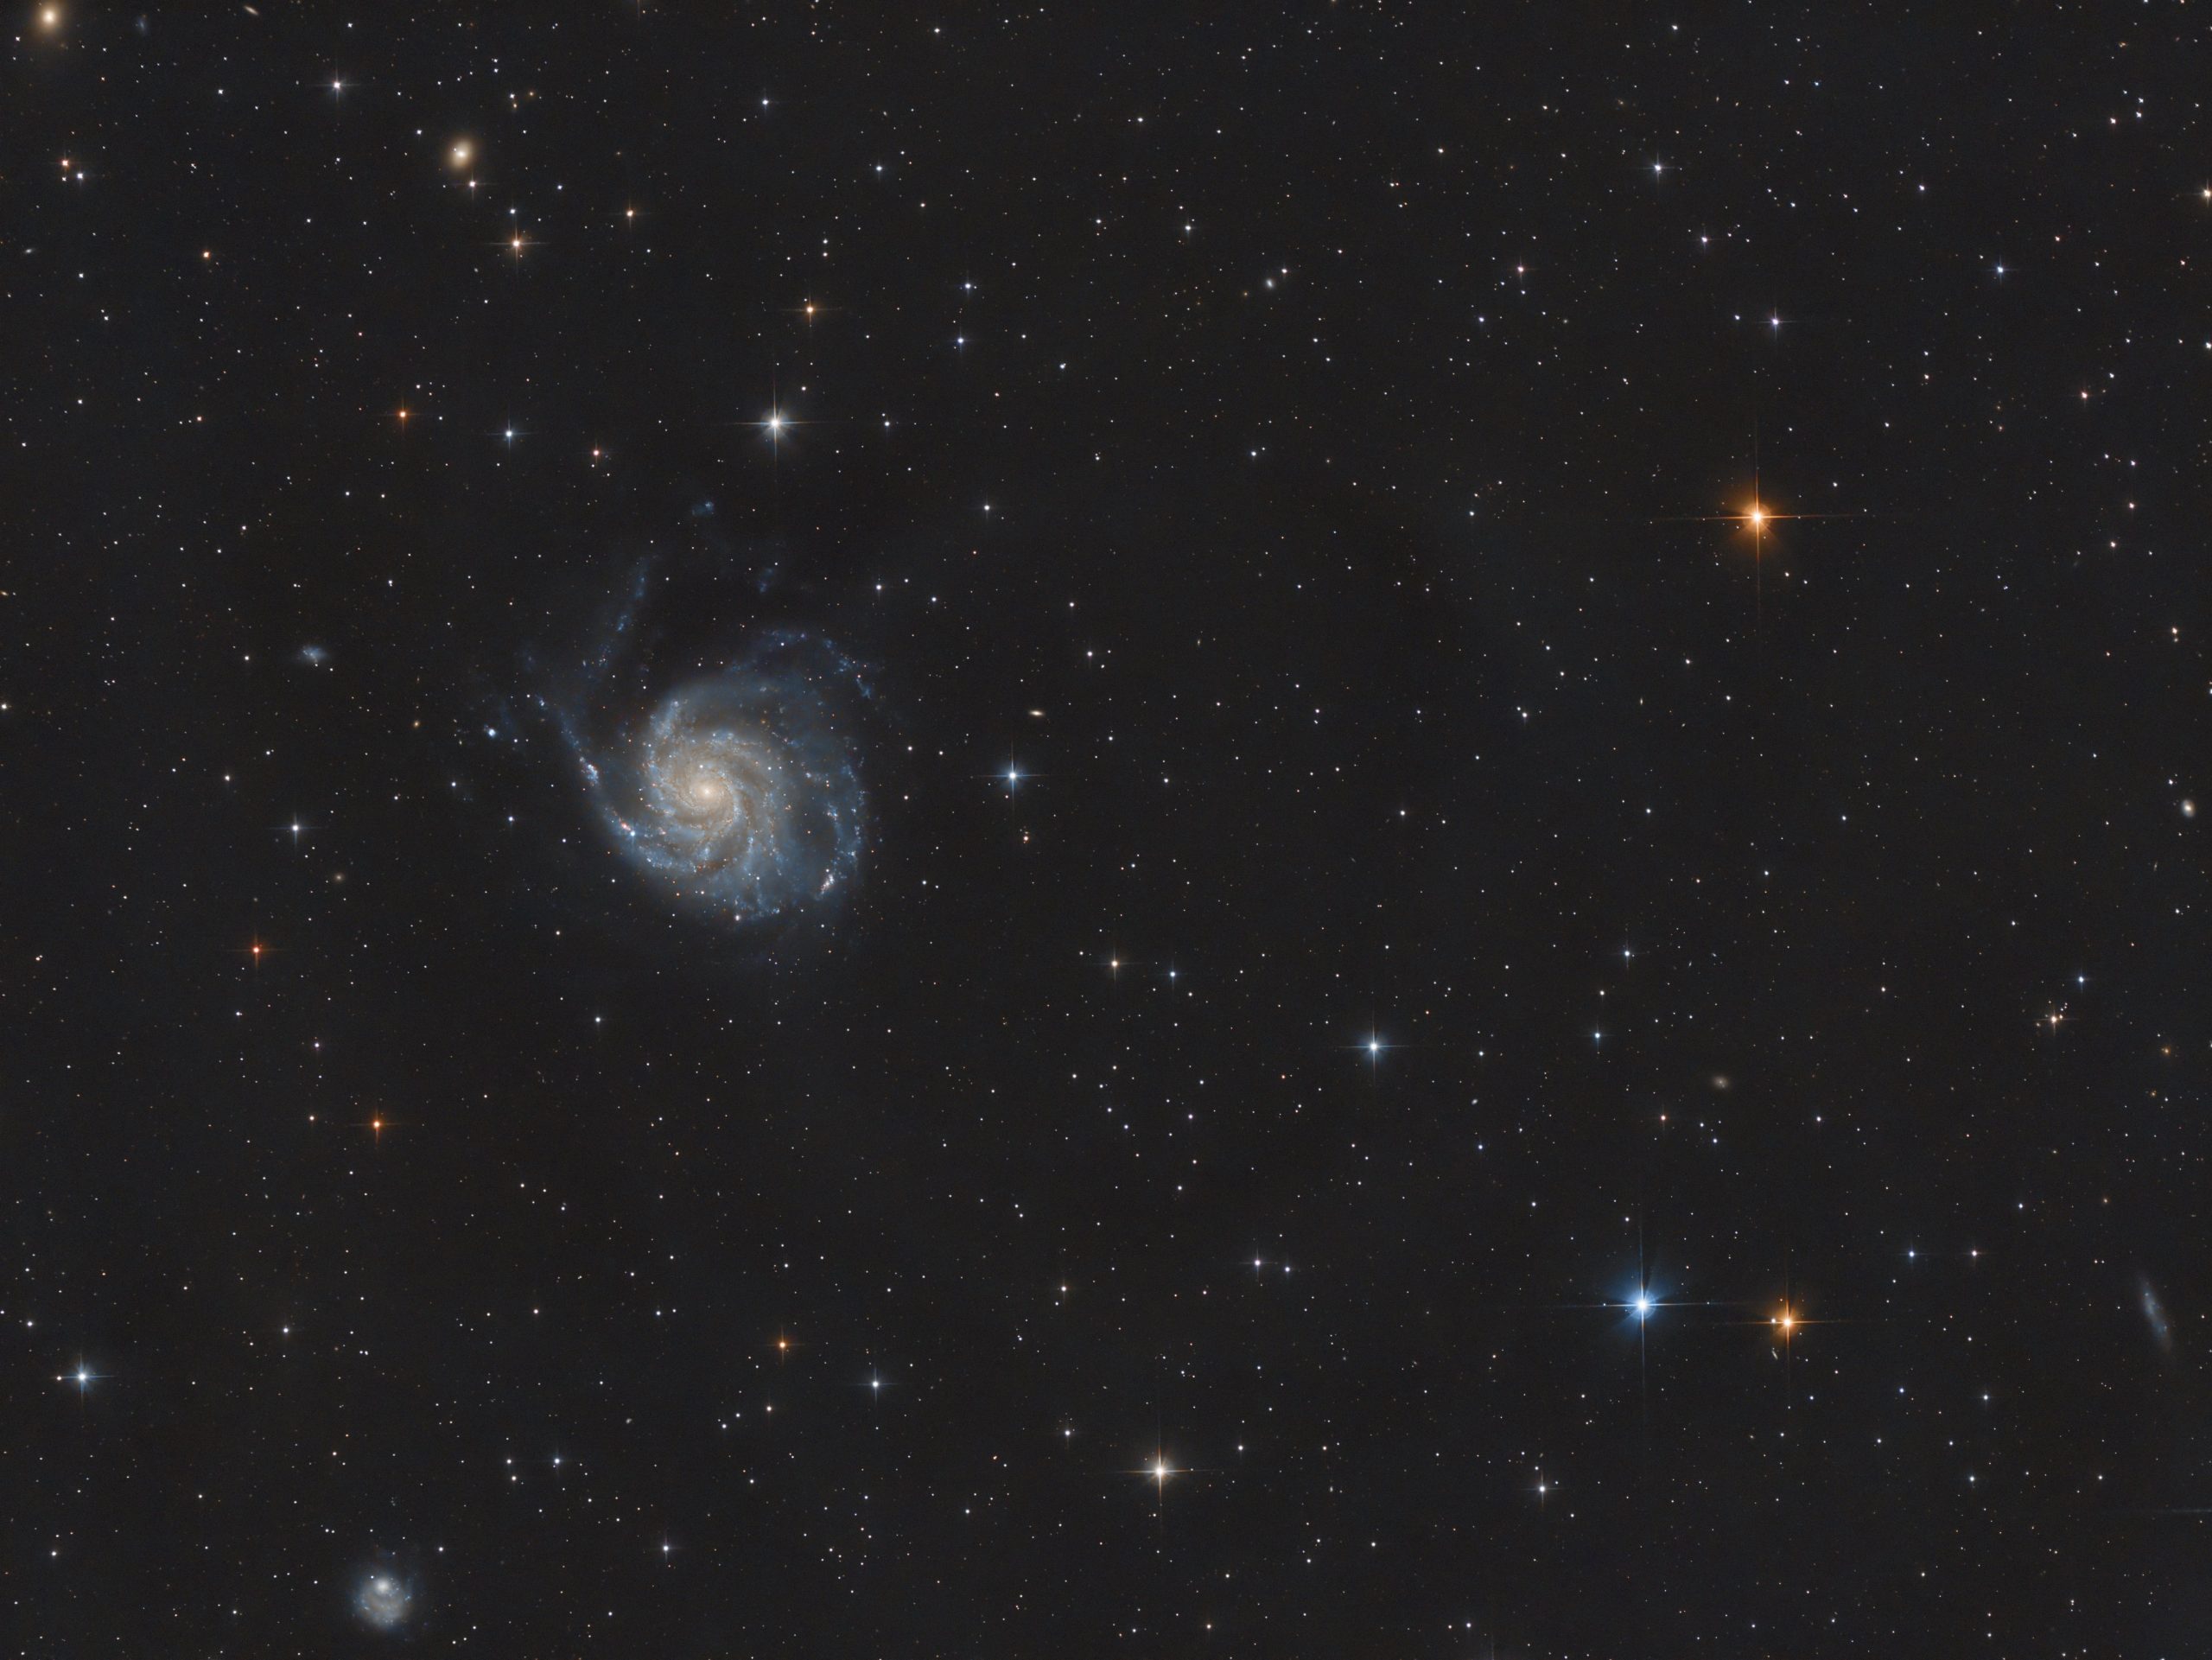 Dit is de 2e opname met de Quattro 150P: M101 met de supernova. Misschien een klein beetje mosterd n